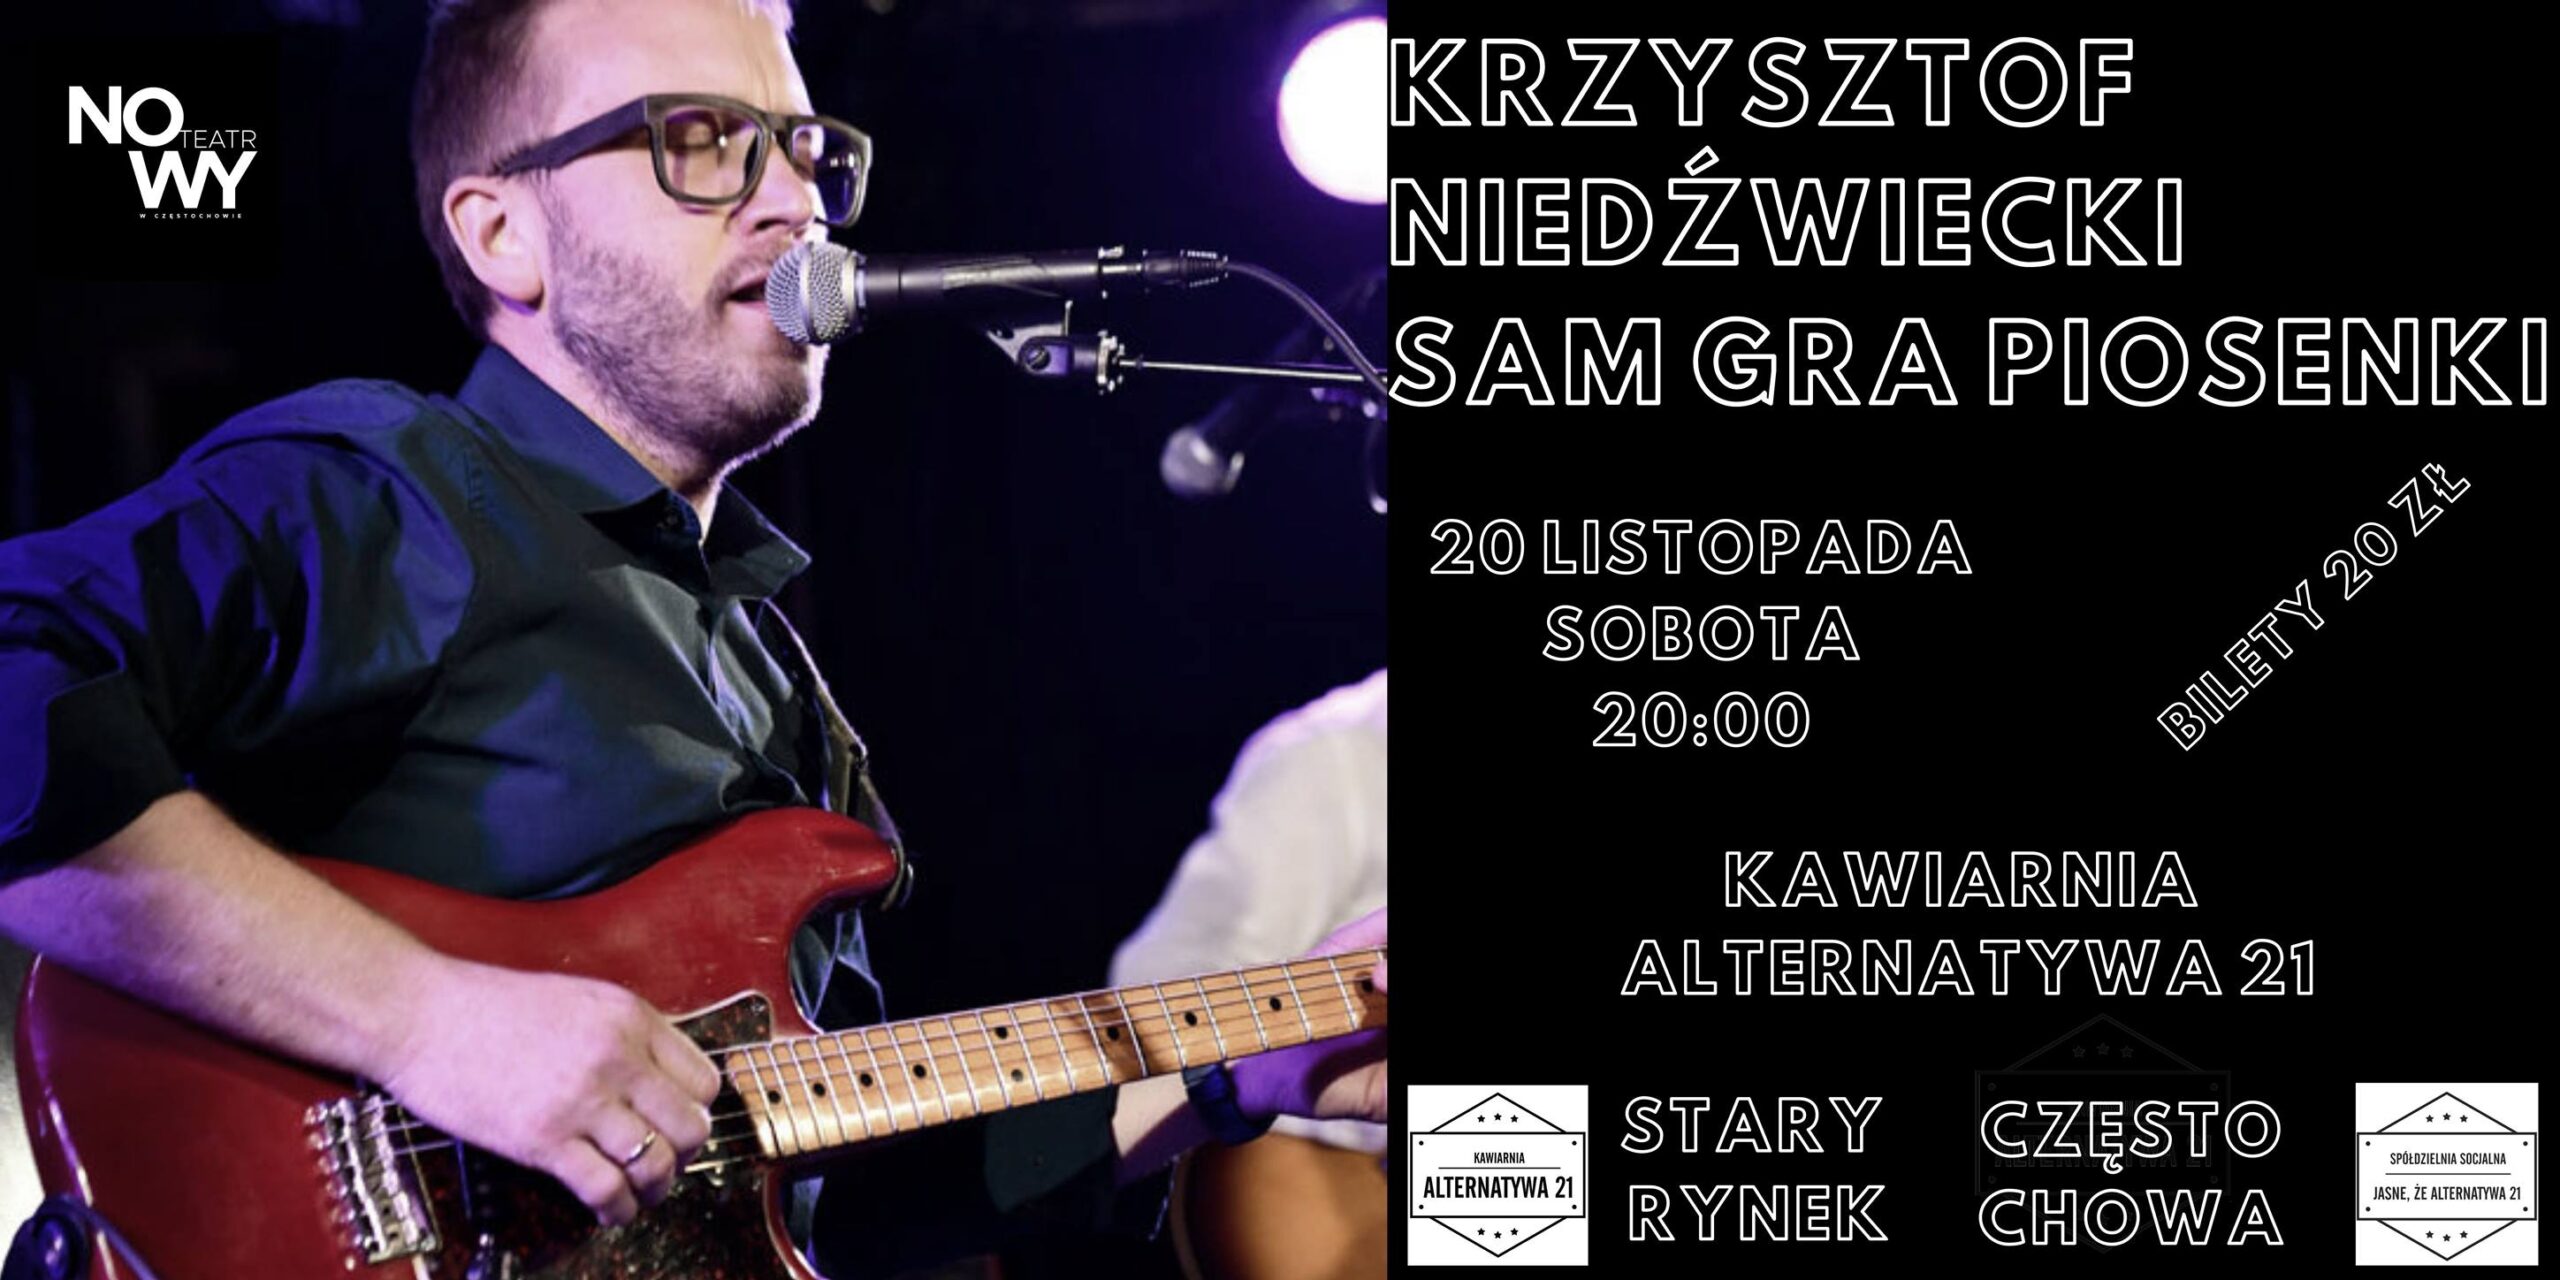 Krzysztof Niedźwiecki sam gra piosenki w częstochowskiej Alternatywie 21 3